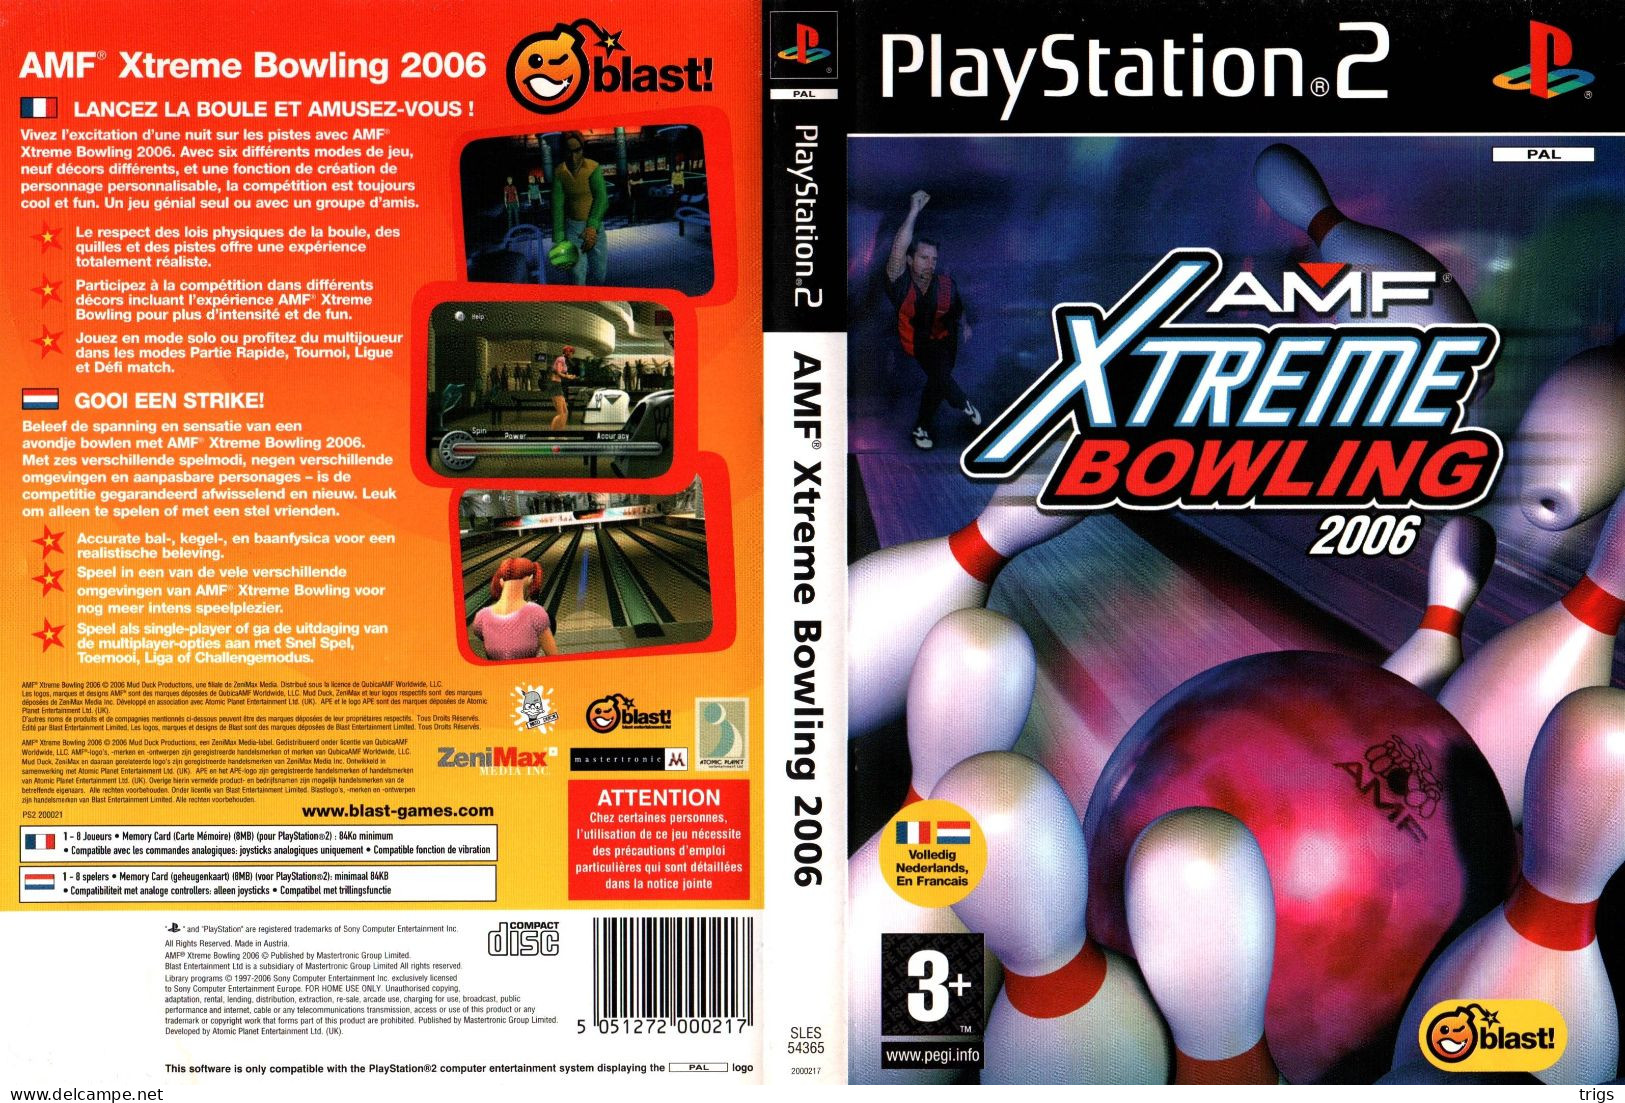 PlayStation 2 - AMF Xtreme Bowling 2006 - Playstation 2